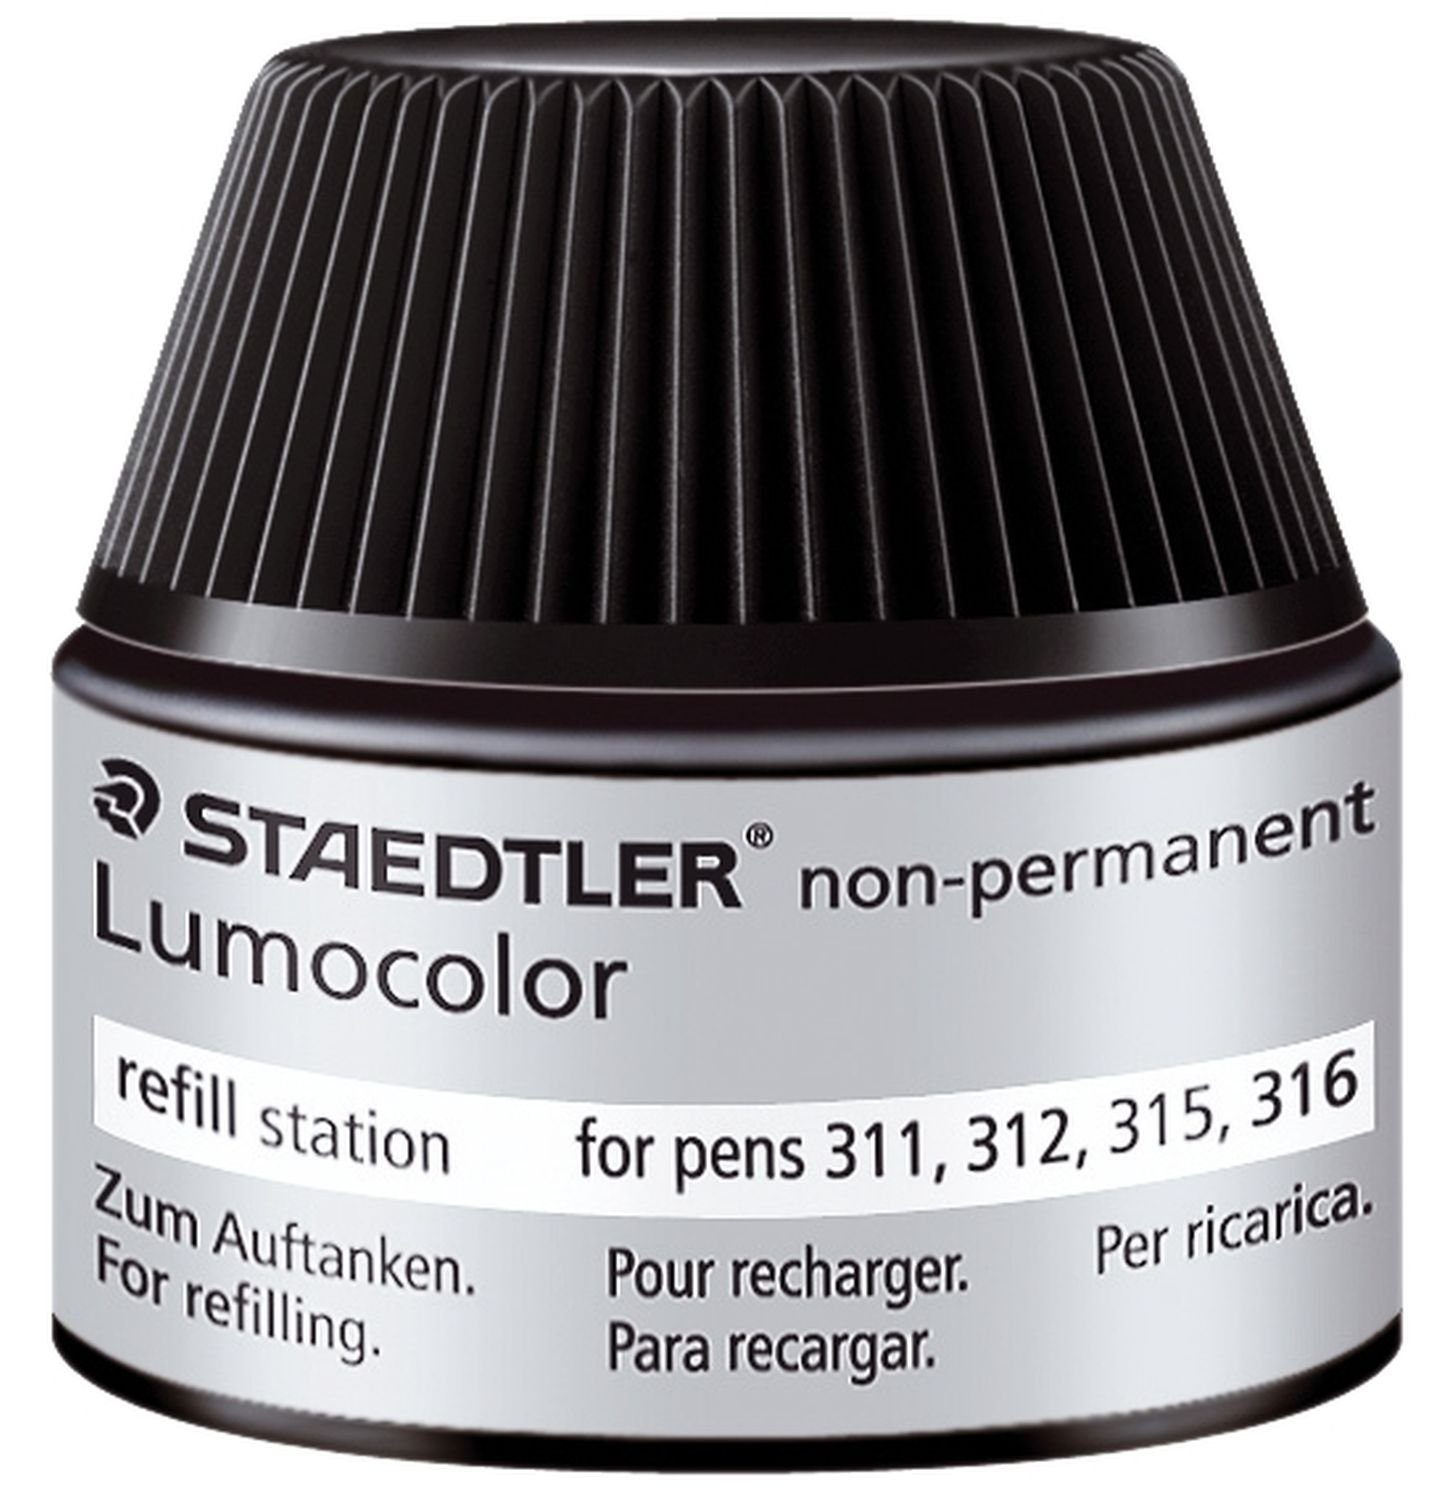 schwarz (x) non-permanent, STAEDTLER Lumocolor Nachfülltinte Refill-Station